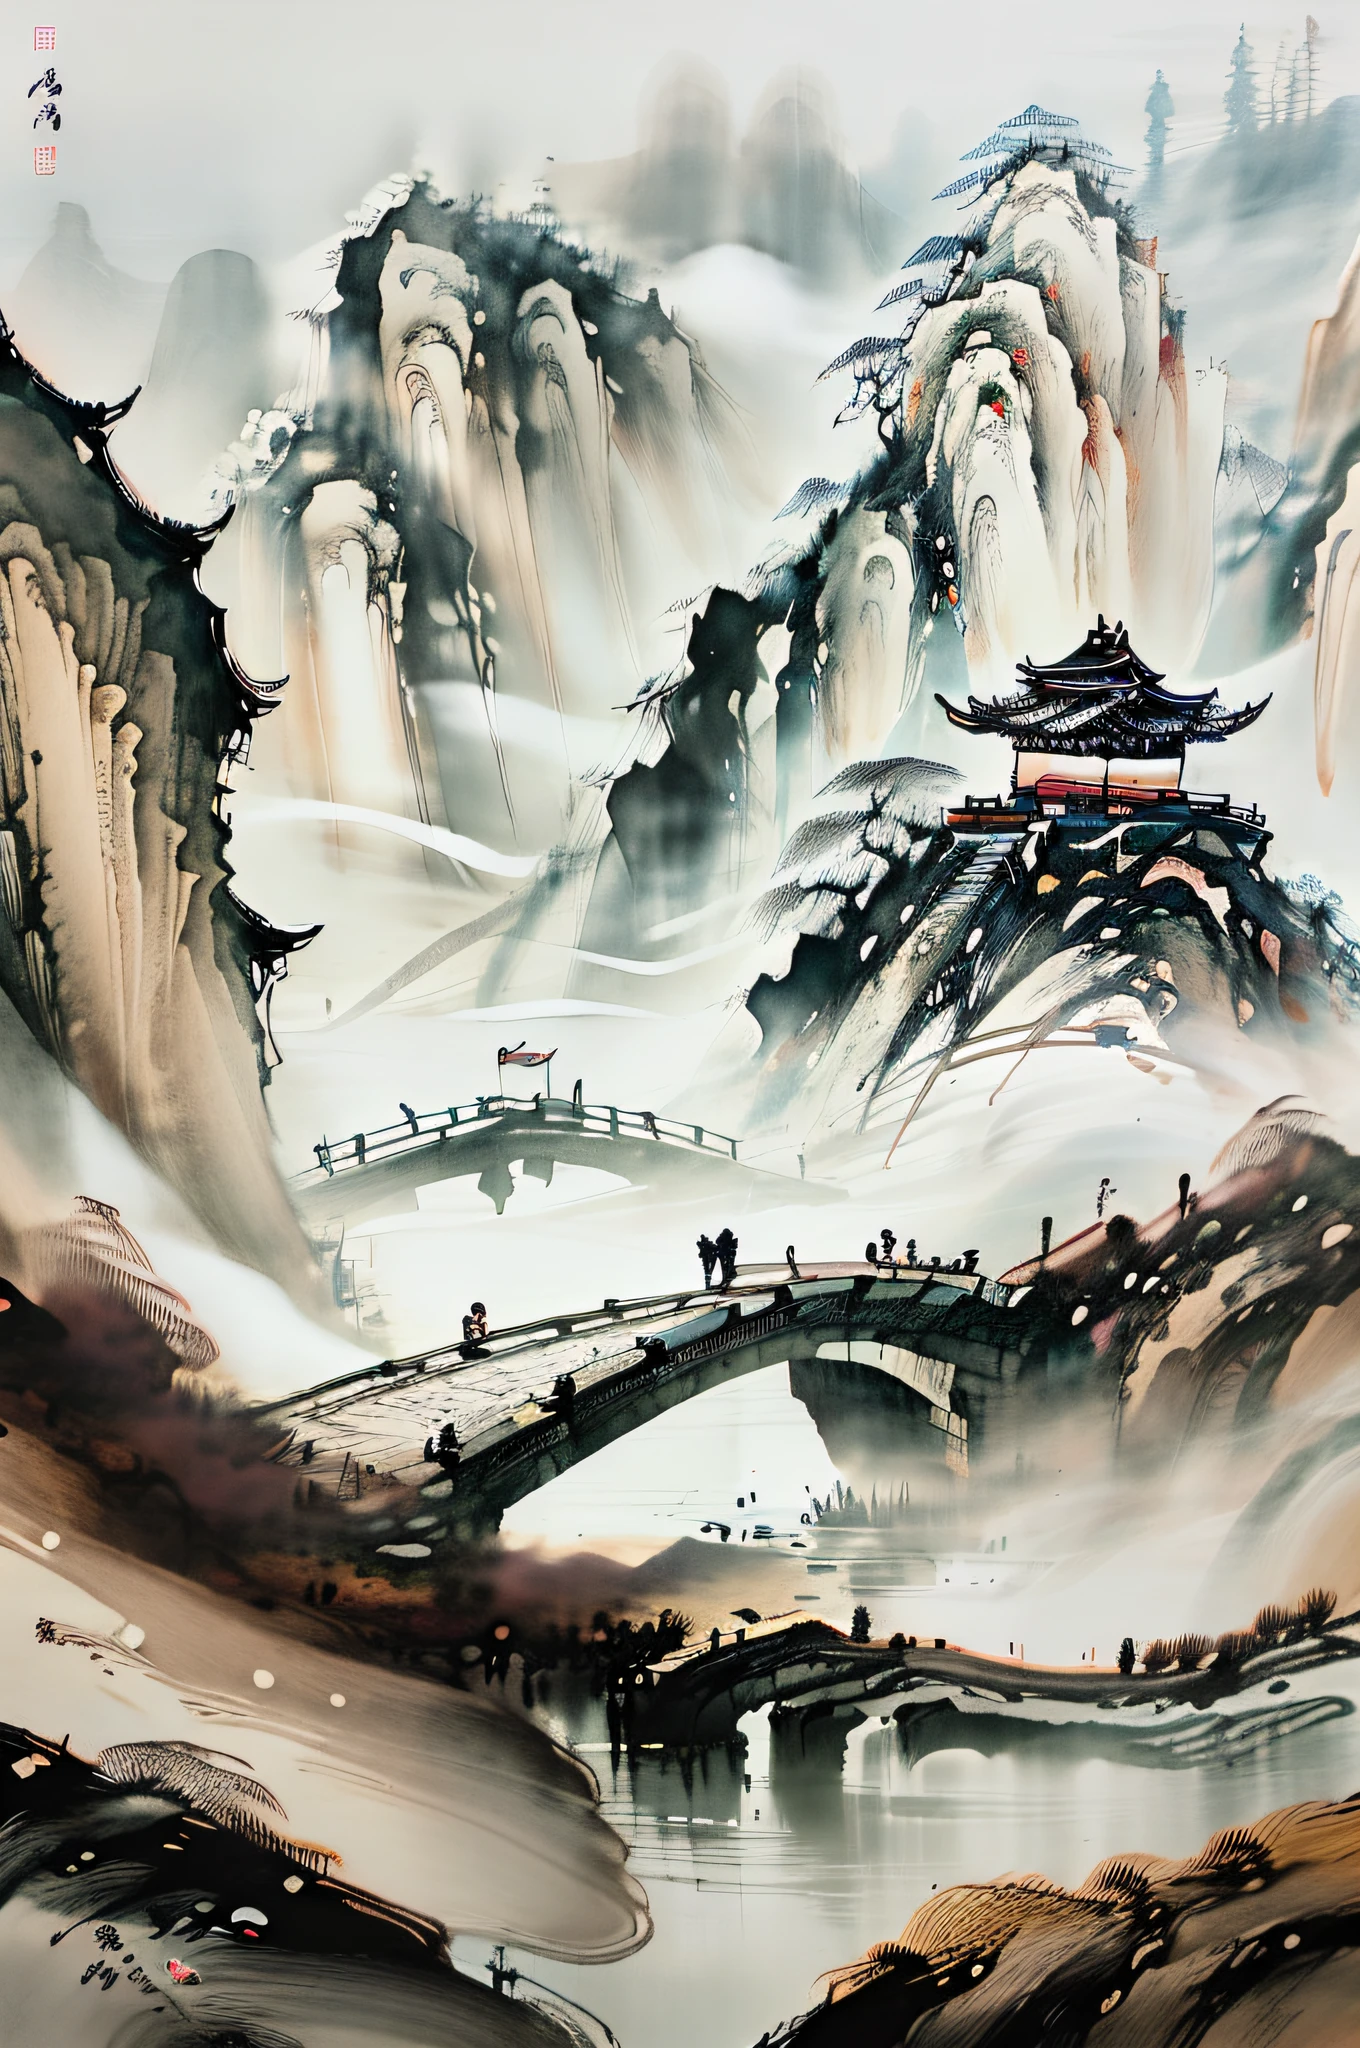 中國武術風格, 和廣闊的天空, 連綿的山脈和陡峭的懸崖, 墨水 wash style, 輪廓光, 大氣層, 景深, 薄霧升起, 竹子, 松樹, 石亭, 瀑布,墨水